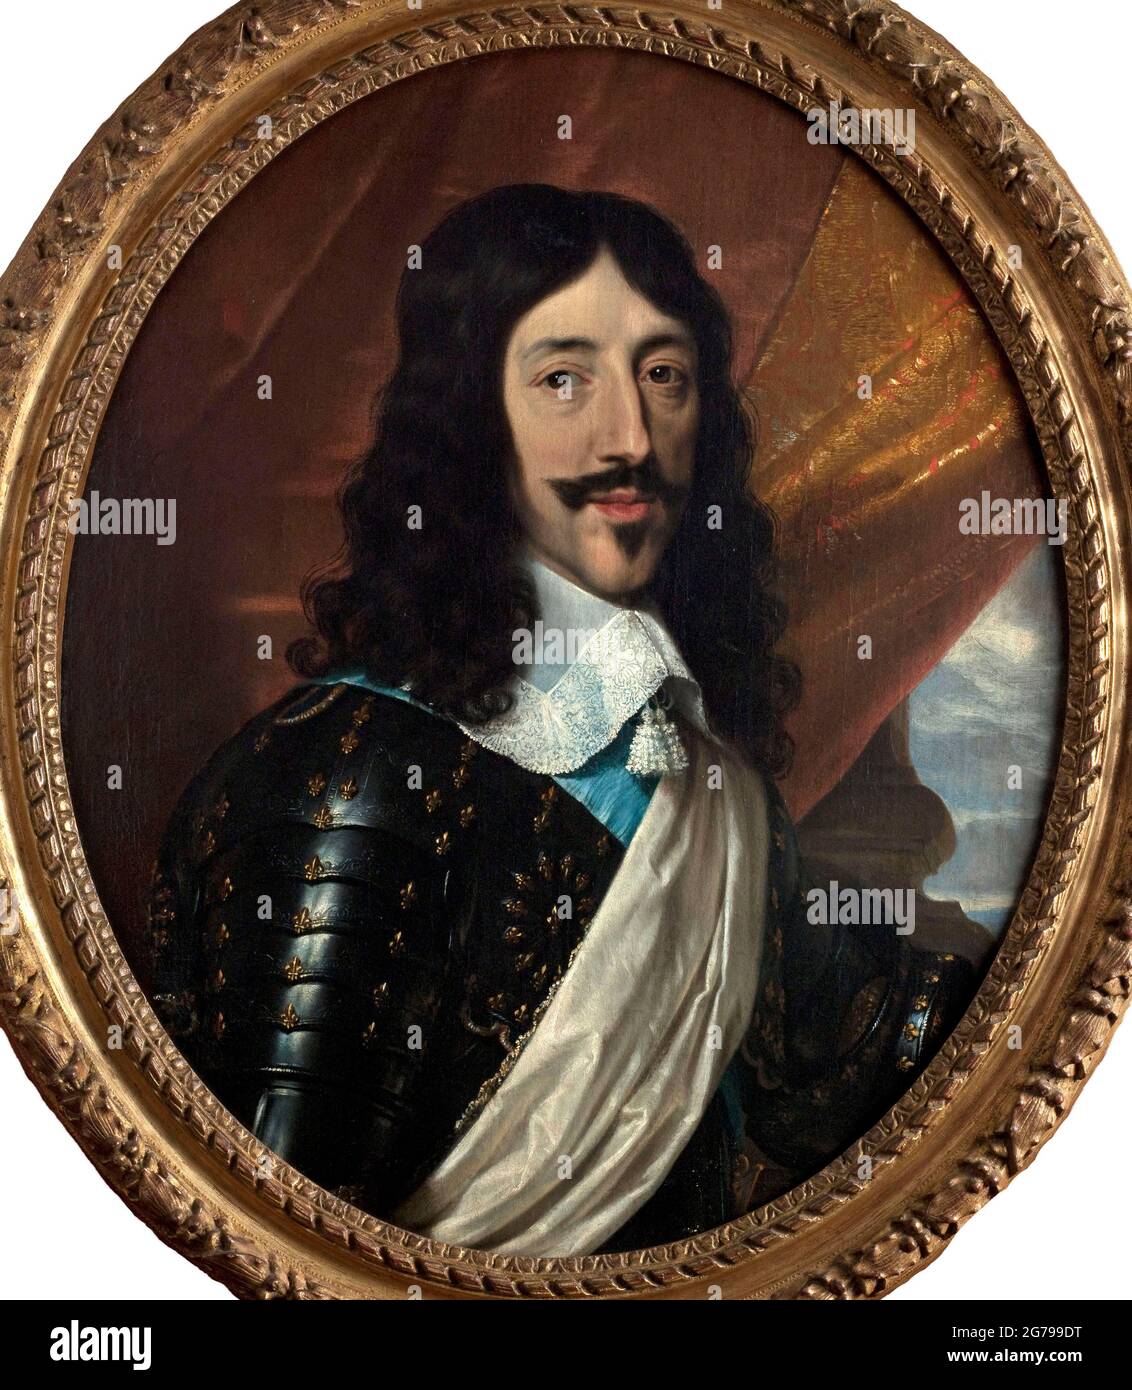 Portrait of Louis XIII of France (1601-1643). Museum: Musée Carnavalet, Paris. Author: ANONYMOUS. Stock Photo